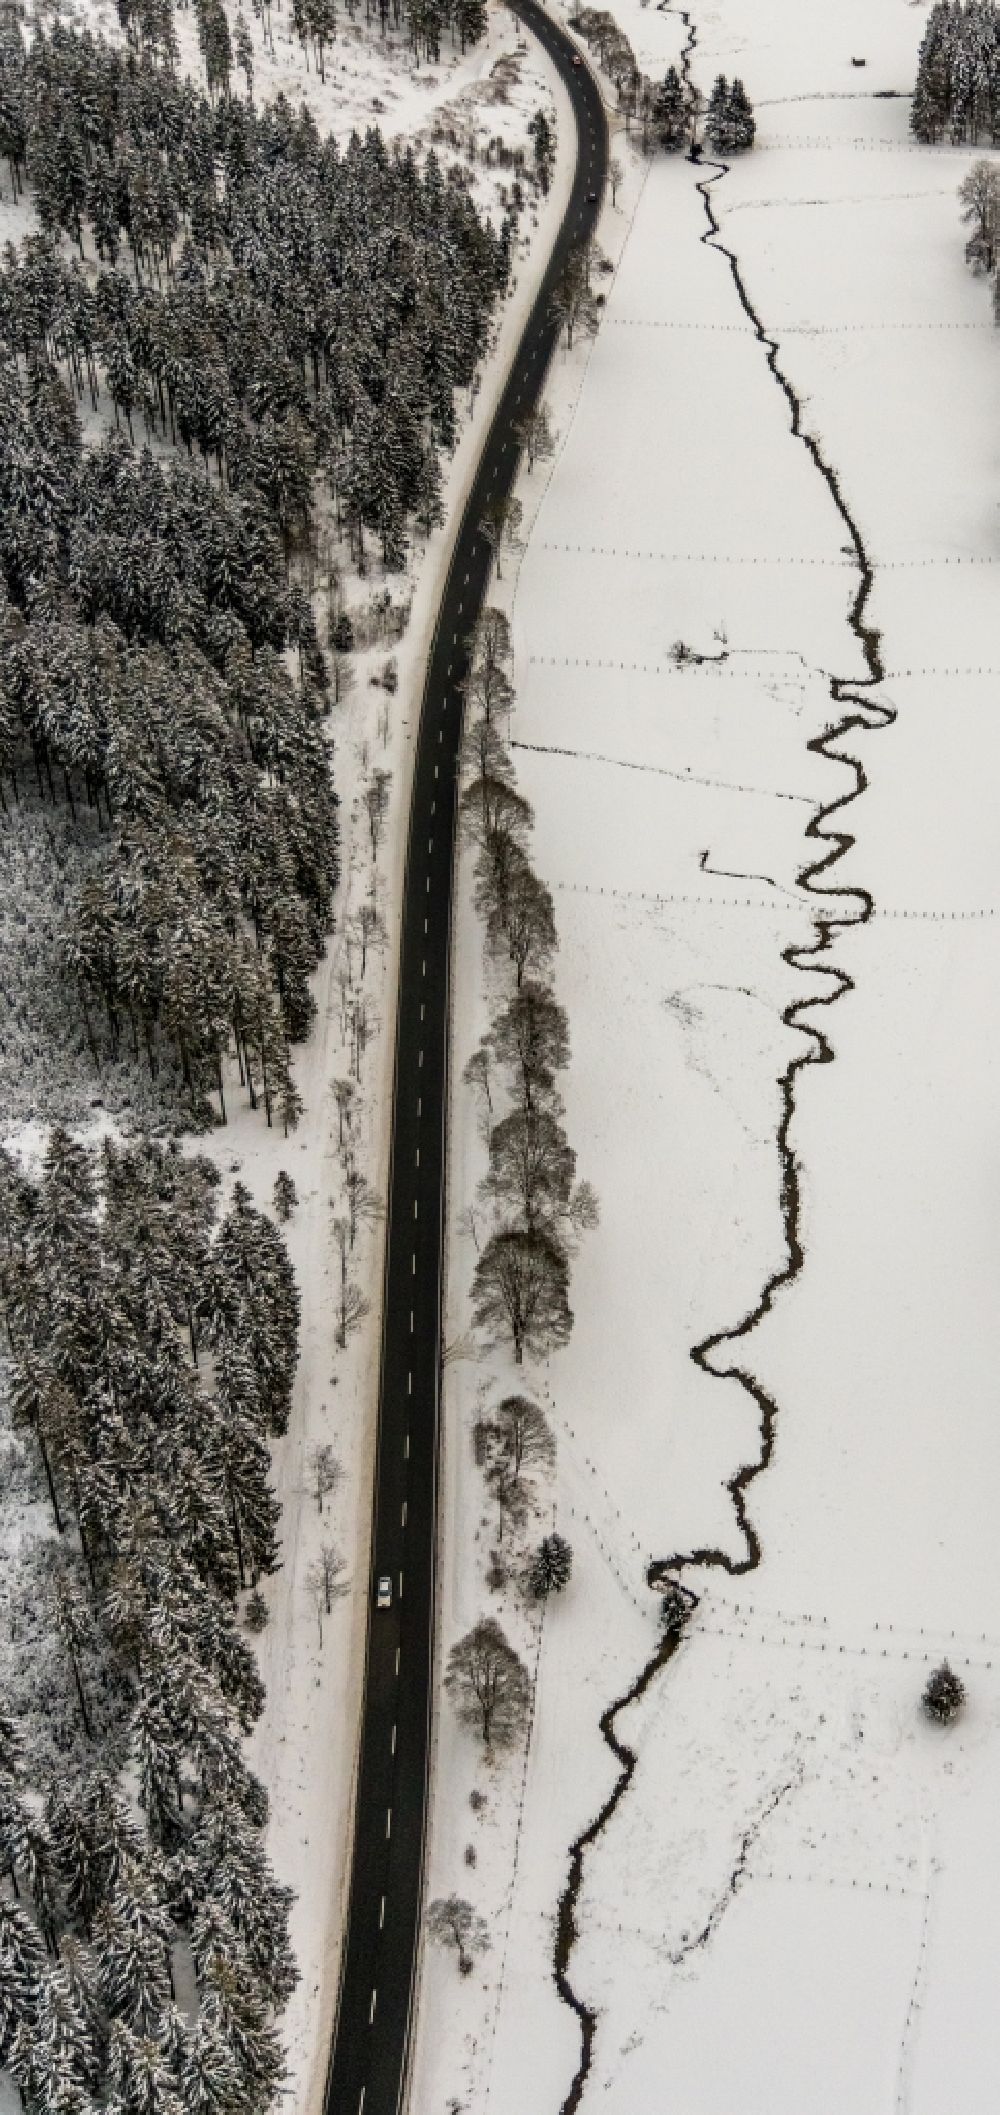 Luftaufnahme Winterberg - Winterluftbild Serpentinenförmiger Kurvenverlauf des Baches - Flüsschens Ruhr bei Winterberg im Bundesland Nordrhein-Westfalen, Deutschland